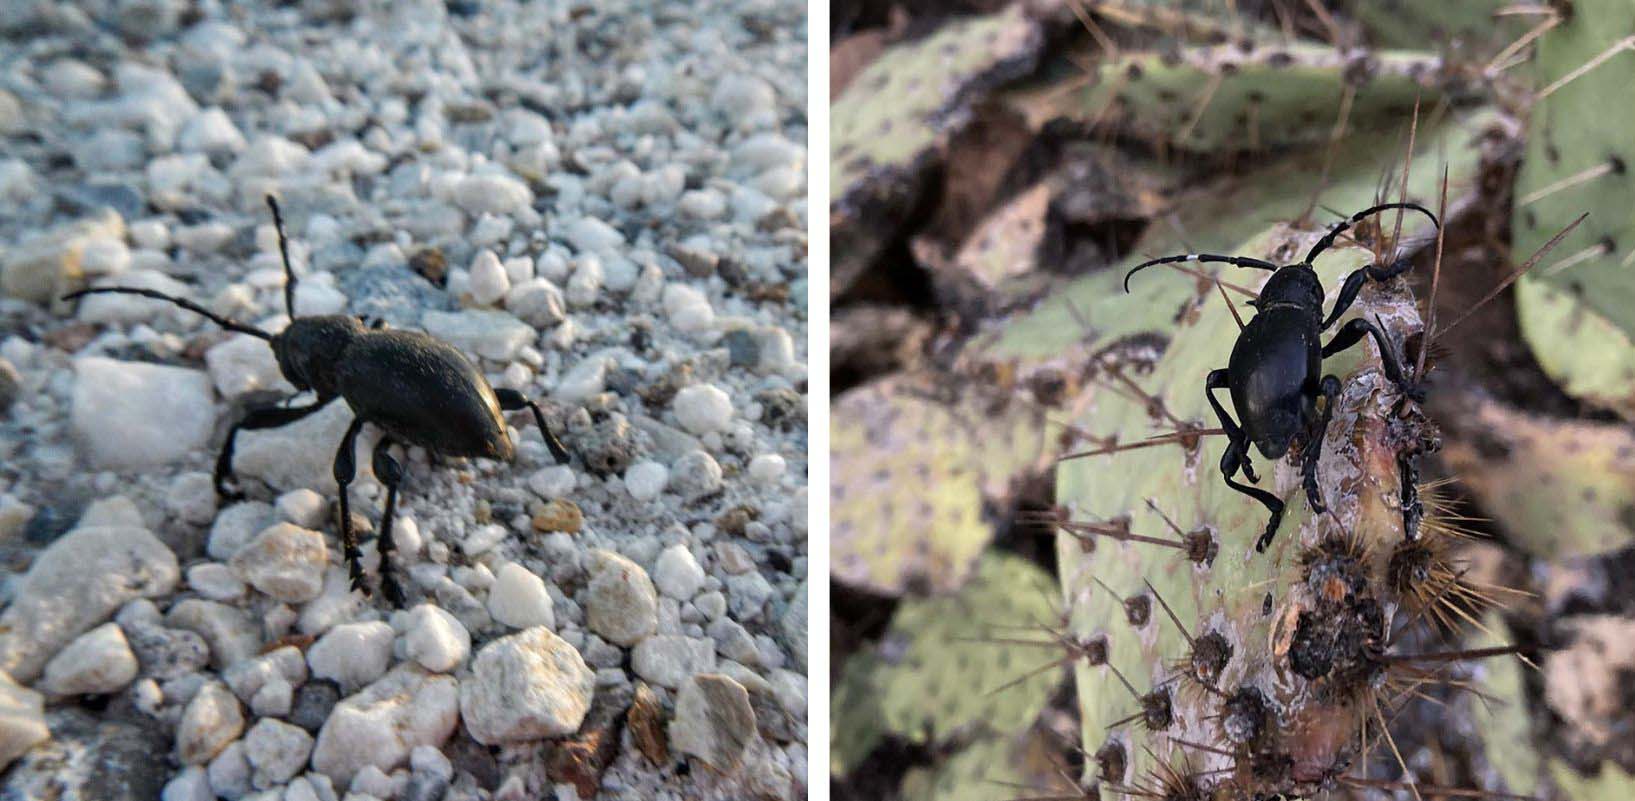 Cactus longhorn beetles